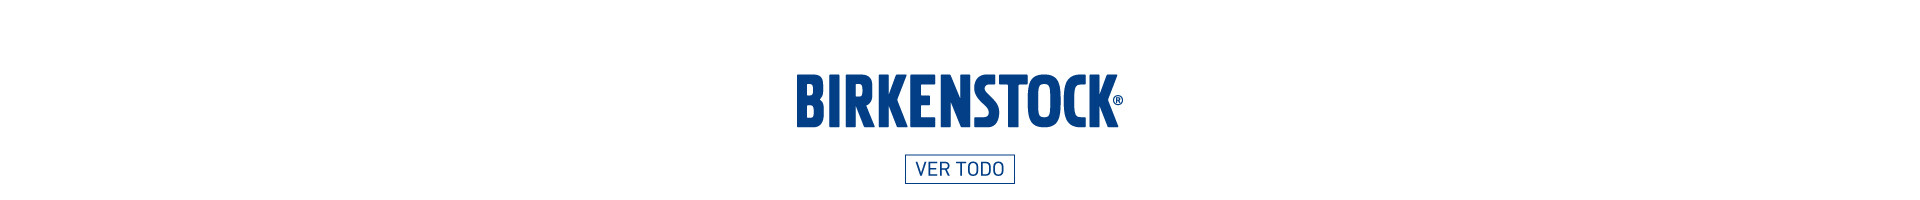 Birkenstock sandalia birkenstock birkenstock mujer birkenstock hombre